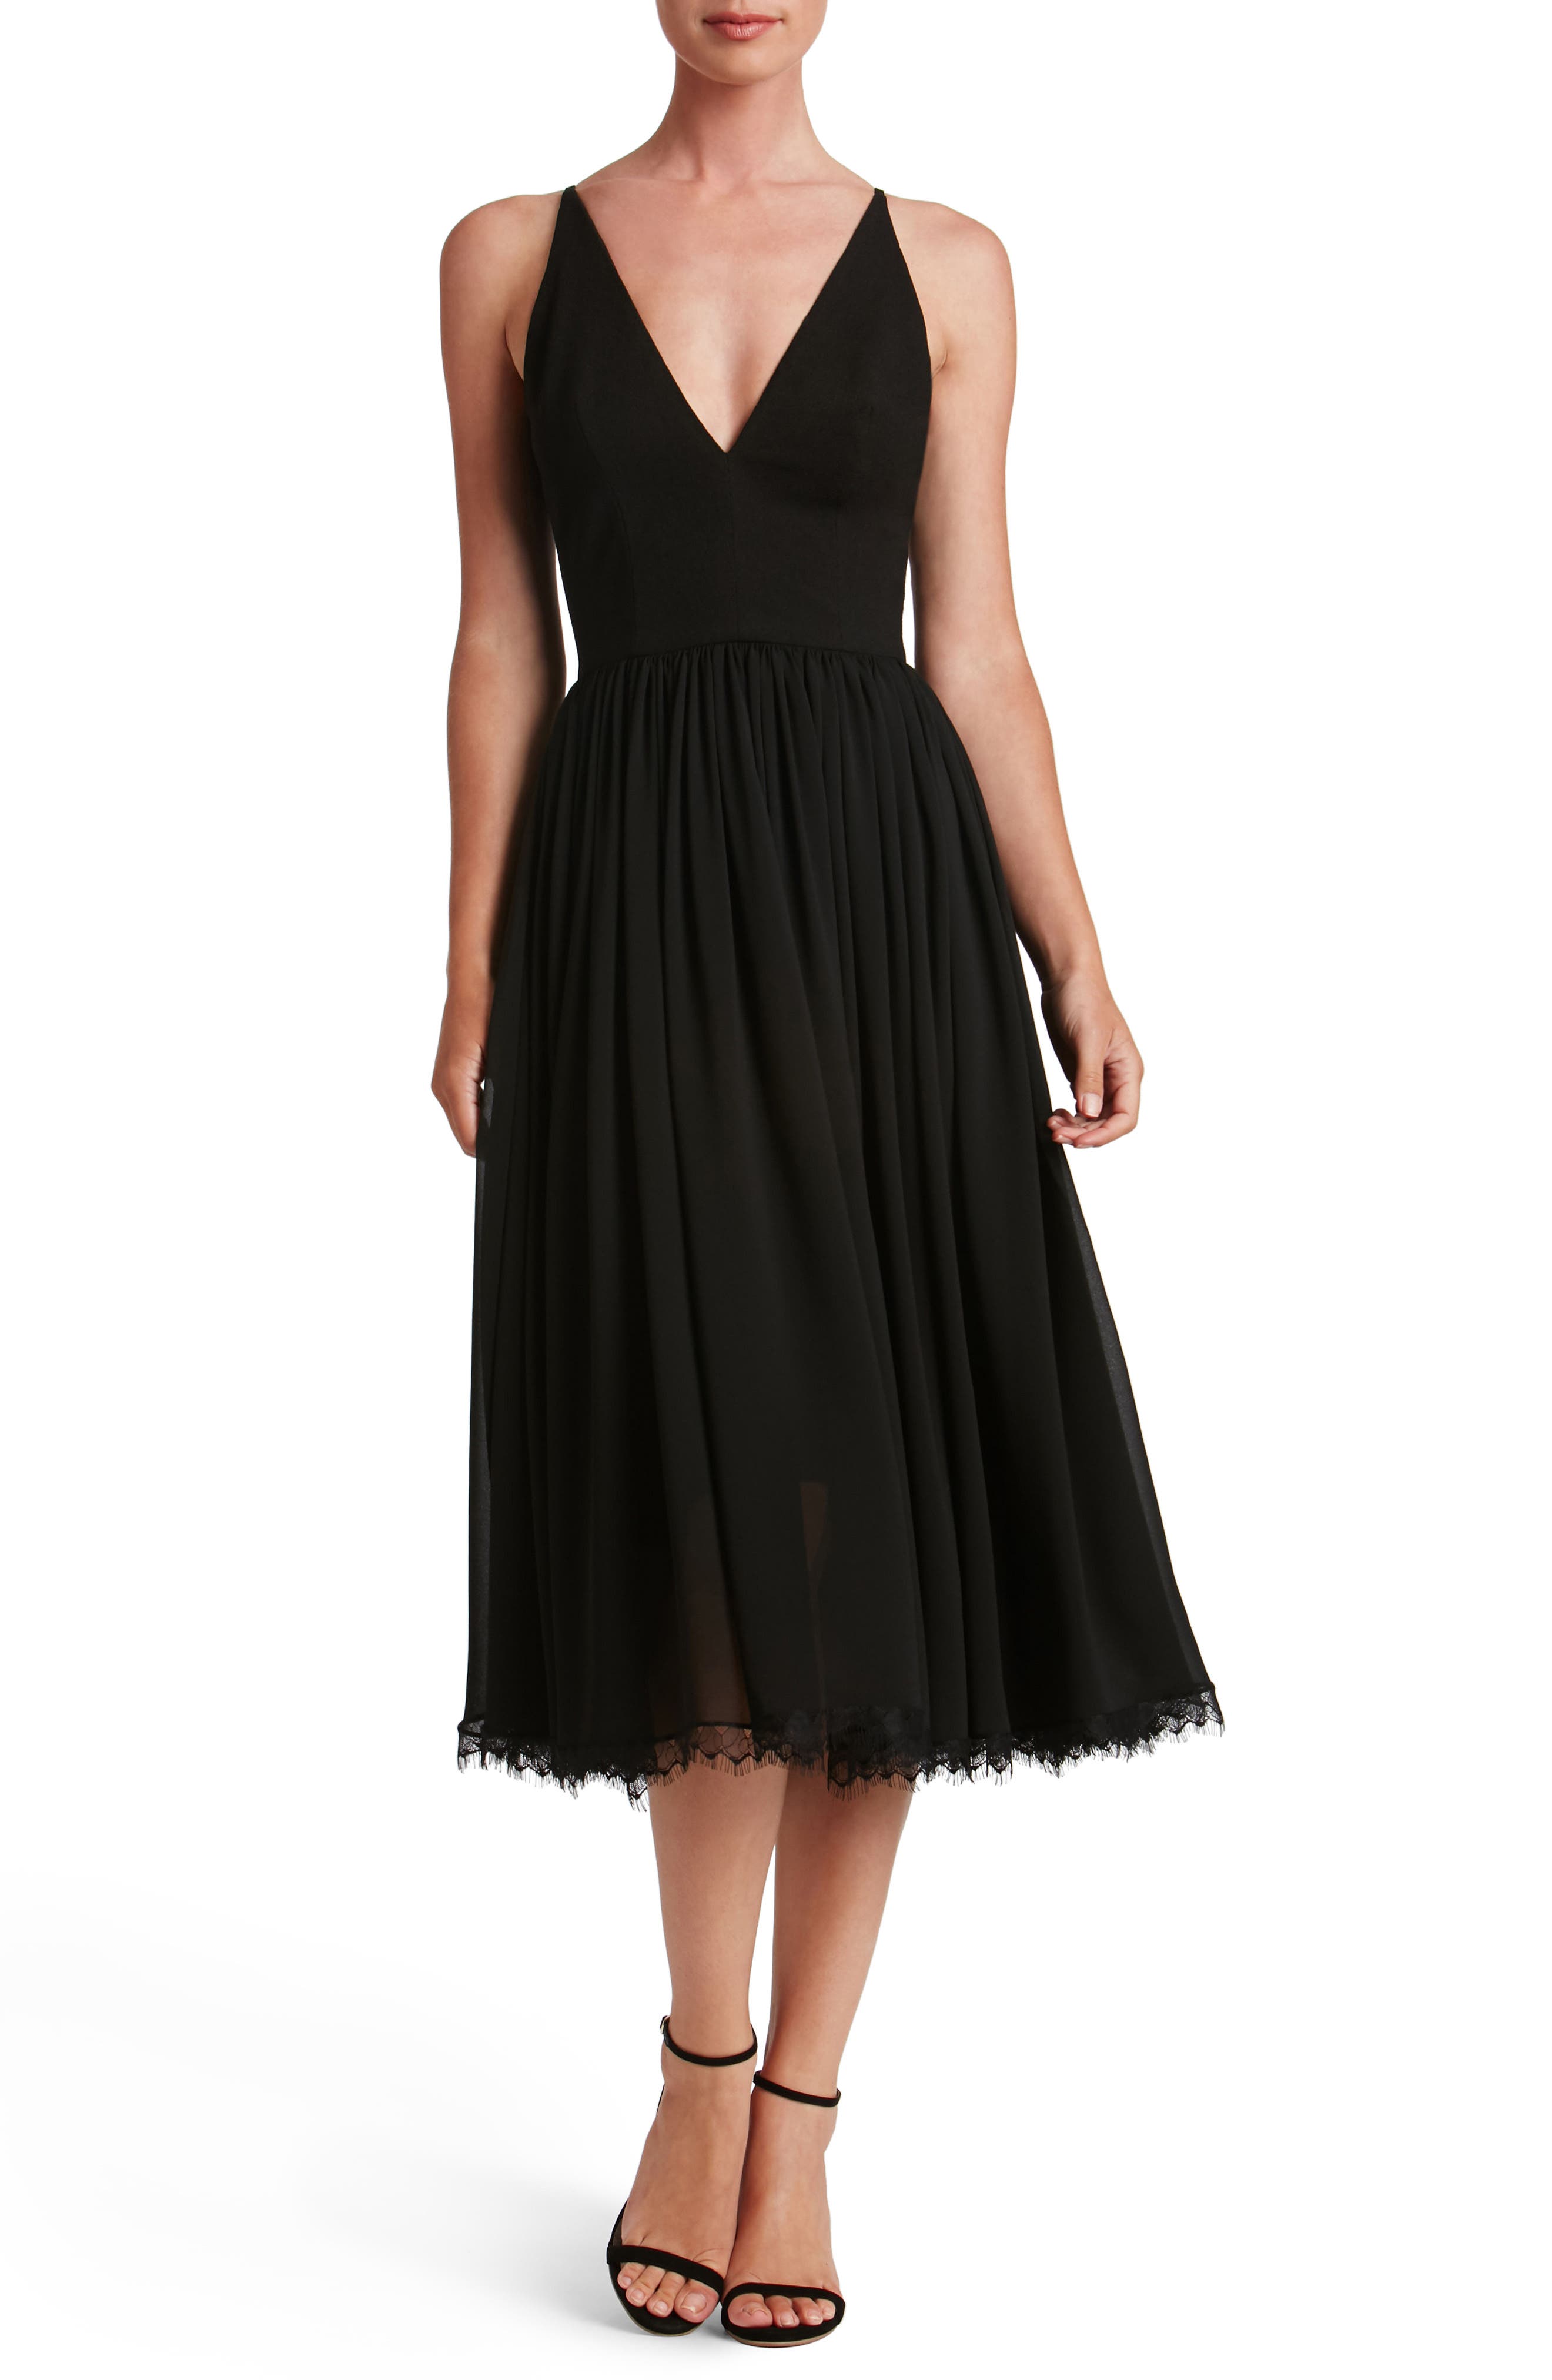 Black Cocktail Dresses ☀ Party Dresses ...